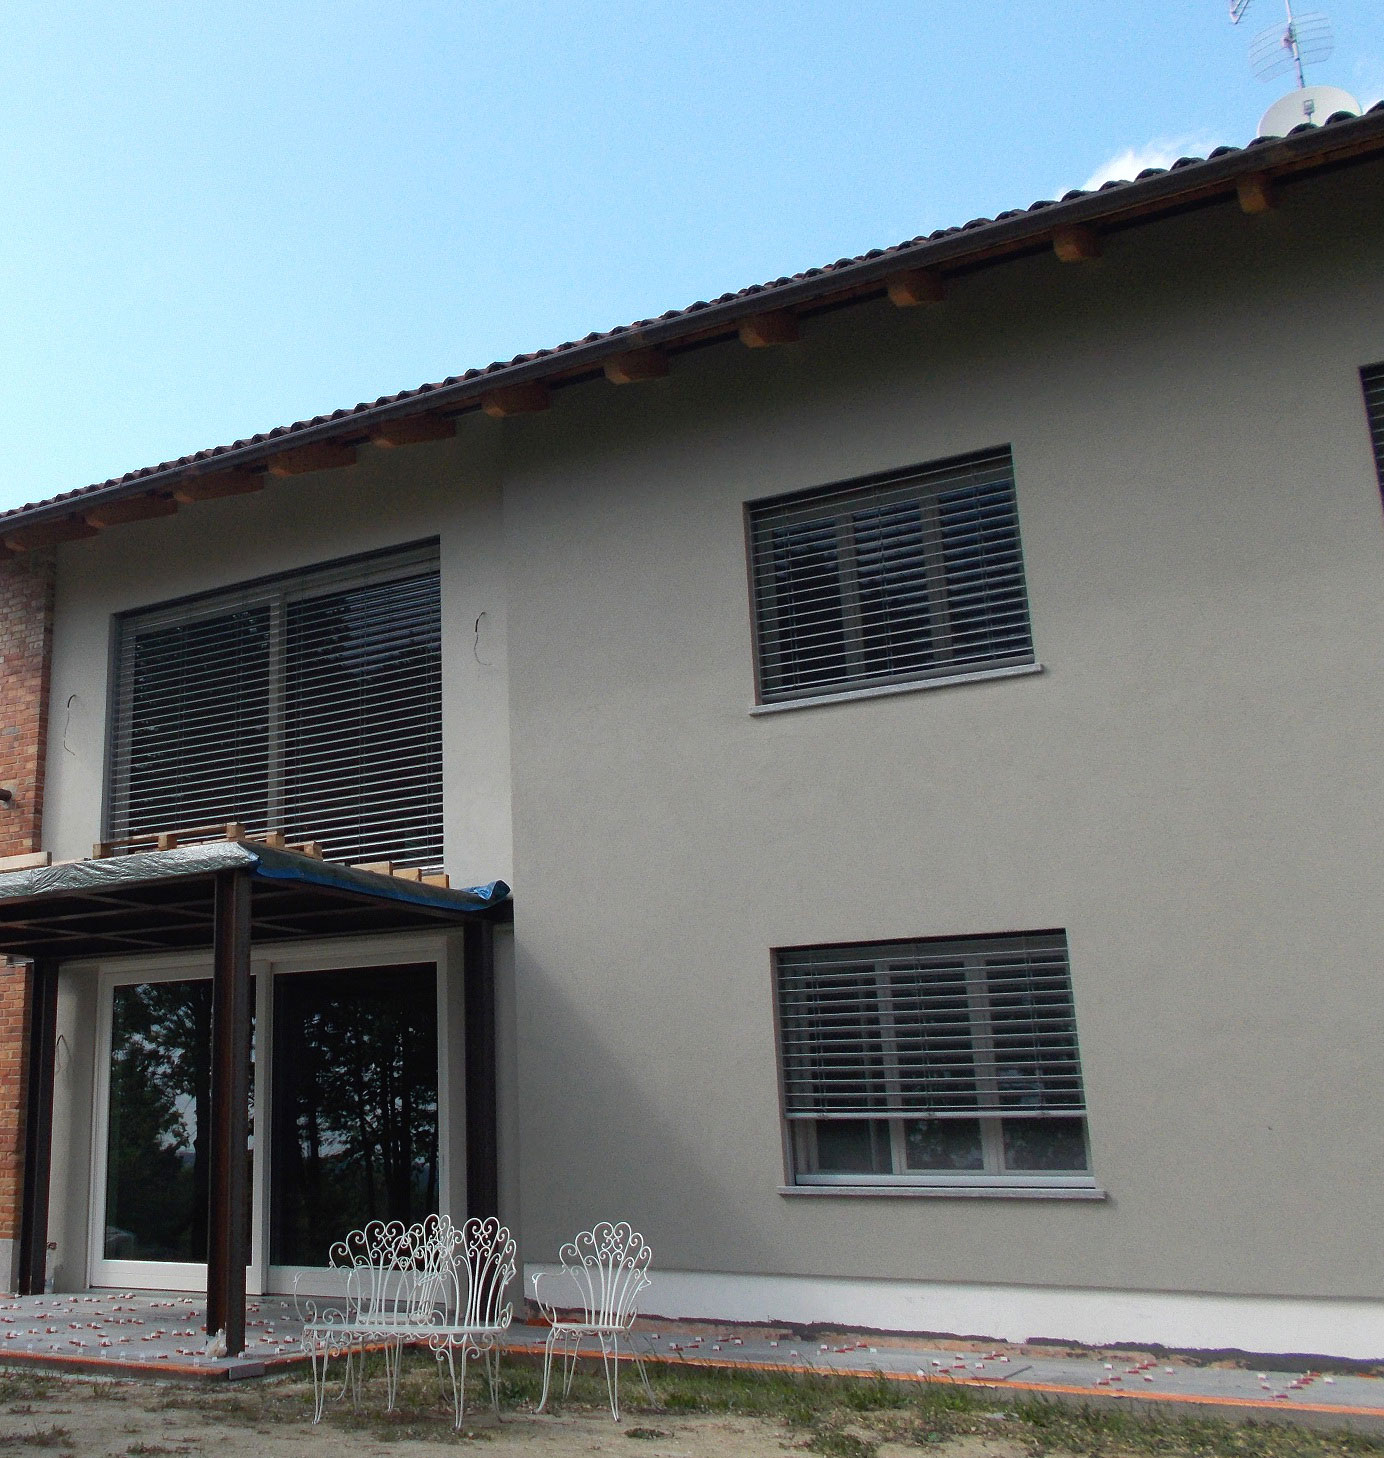 Abitazione privata – Villafranca d’Asti